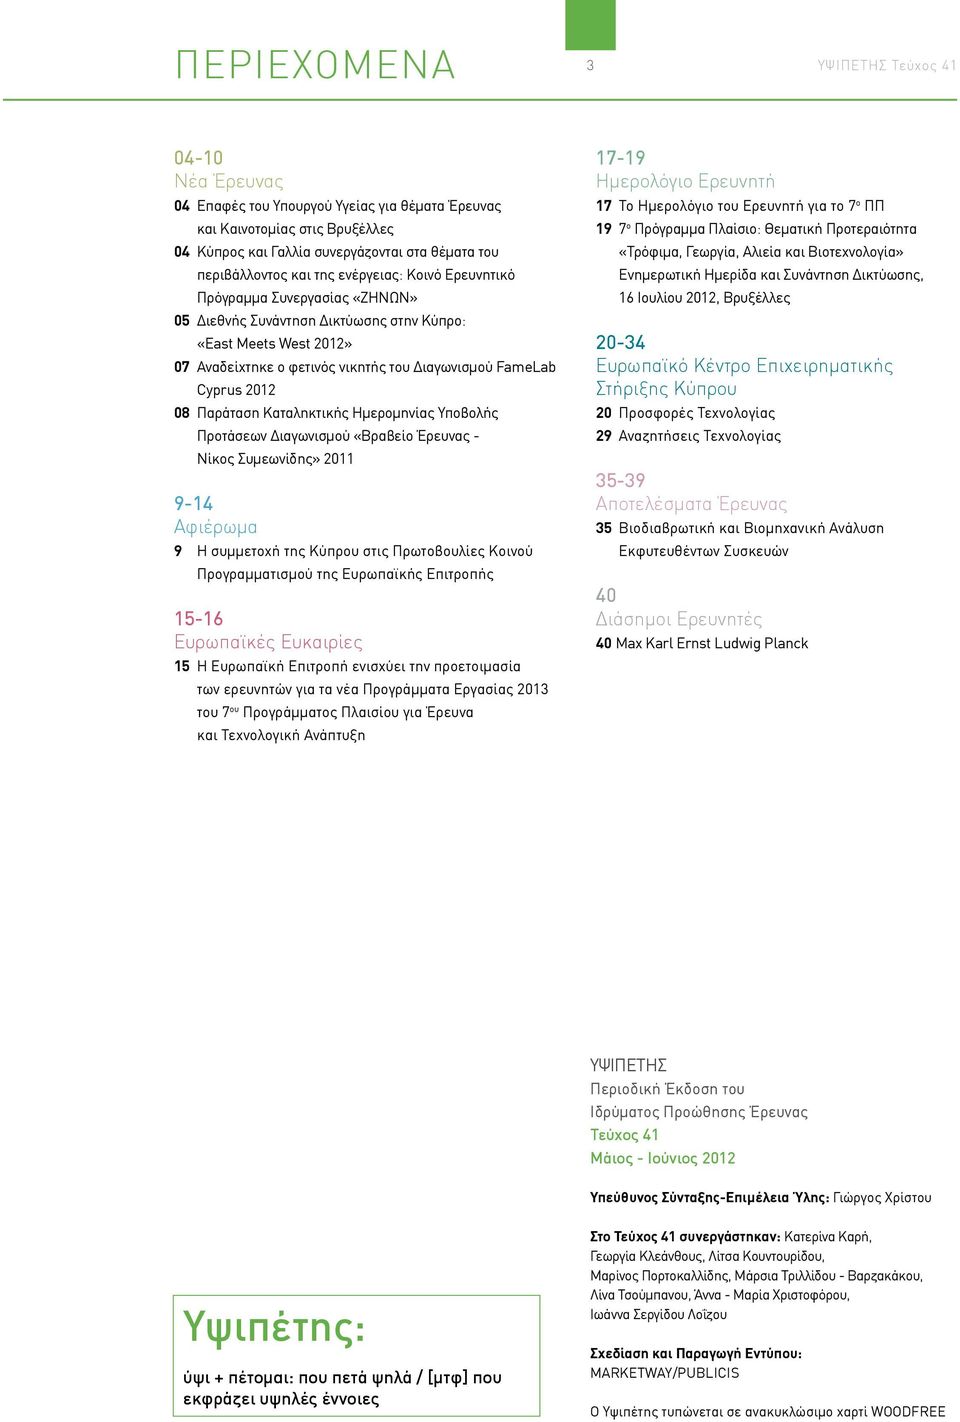 Παράταση Καταληκτικής Ημερομηνίας Υποβολής Προτάσεων Διαγωνισμού «Βραβείο Έρευνας - Νίκος Συμεωνίδης» 2011 9-14 Αφιέρωμα 9 Η συμμετοχή της Κύπρου στις Πρωτοβουλίες Κοινού Προγραμματισμού της